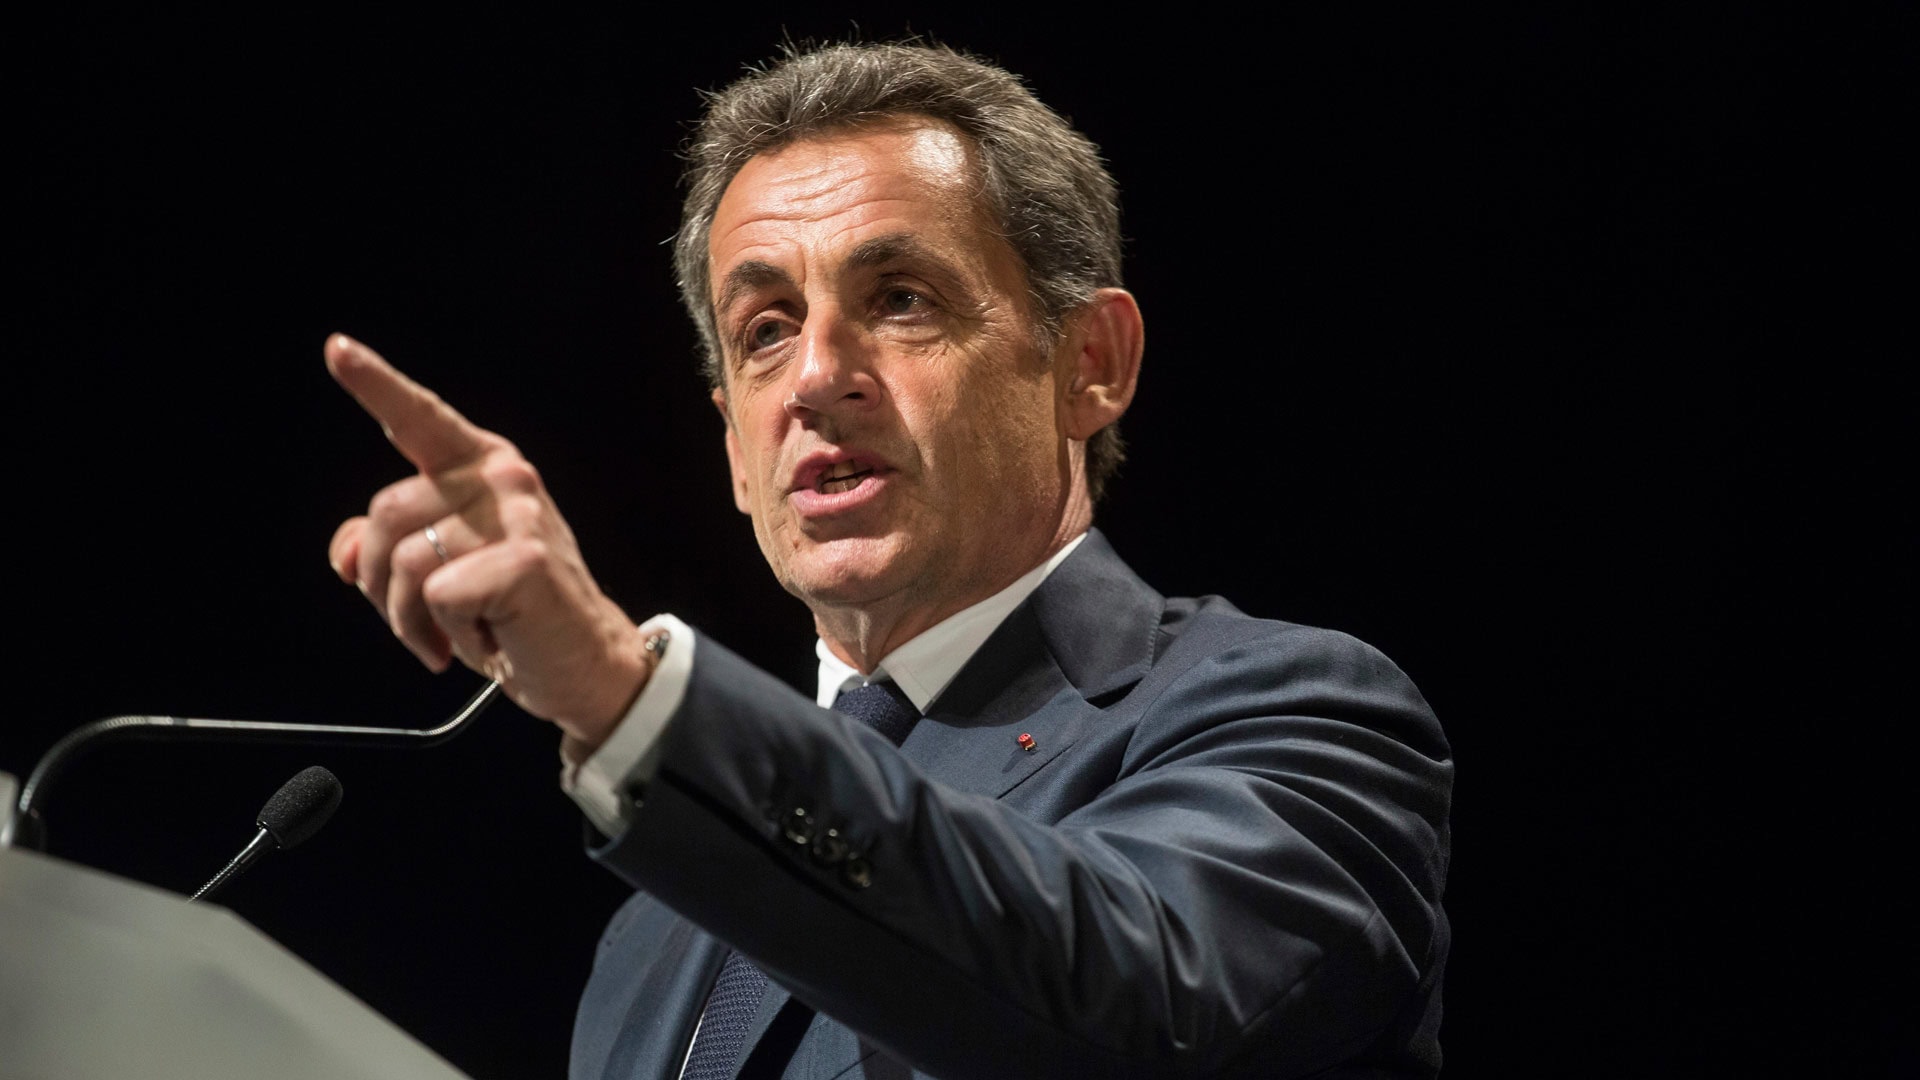 Imputan a Sarkozy por financiar con dinero libio su campaña de 2007